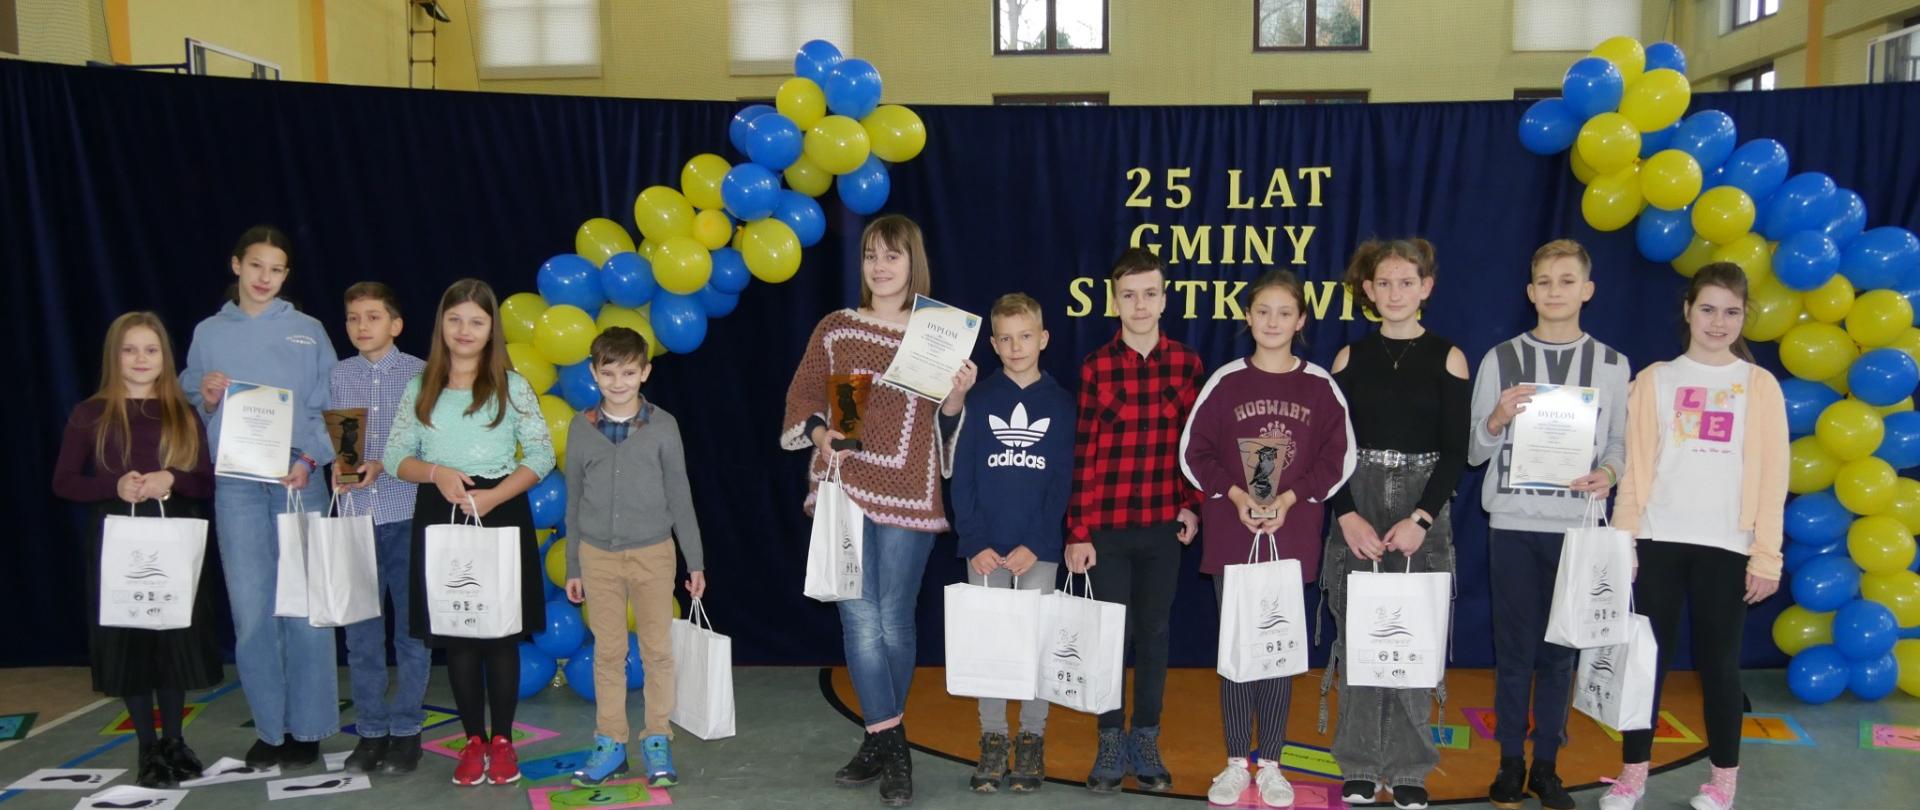 Uczniowie na tle dekoracji z napisem "25 lat Gminy Spytkowice", w tle balony w barwie żółto- niebieskiej, trzymają w papierowe opakowania z nagrodami otrzymanymi w ramach udziału w konkursie.